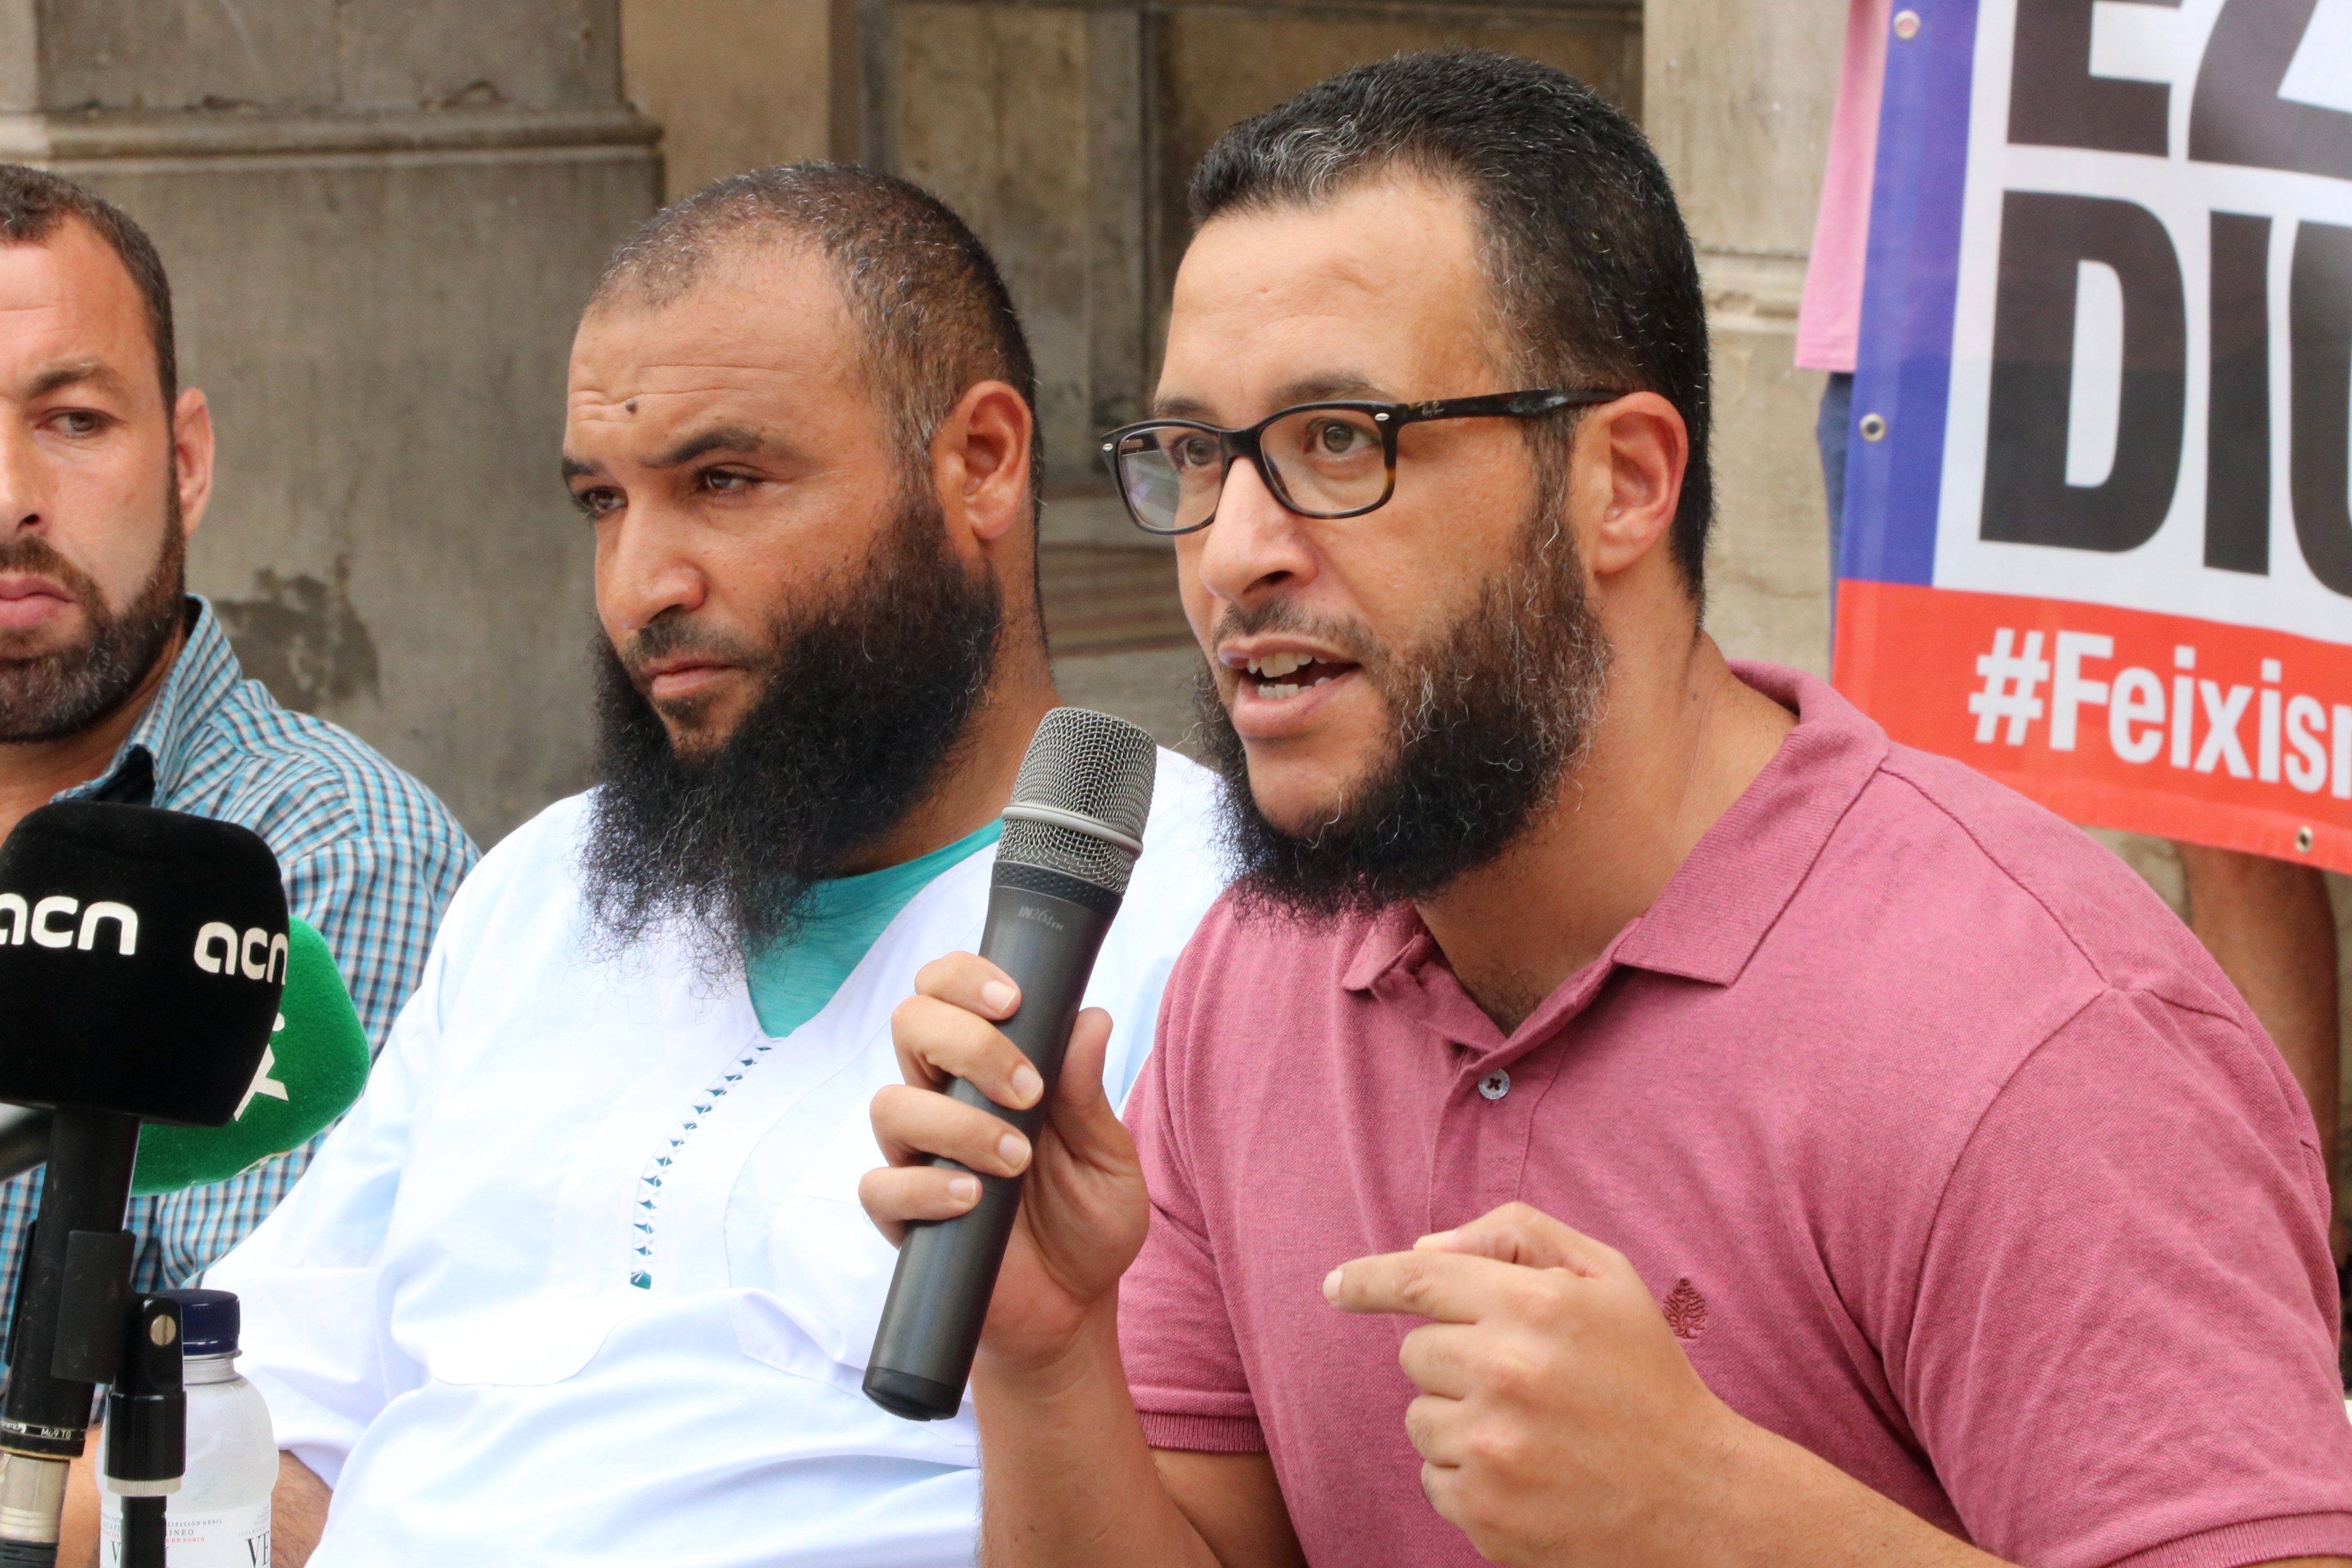 Fracassa l'intent de frenar les expulsions dels activistes Said Badaoui i Azbir